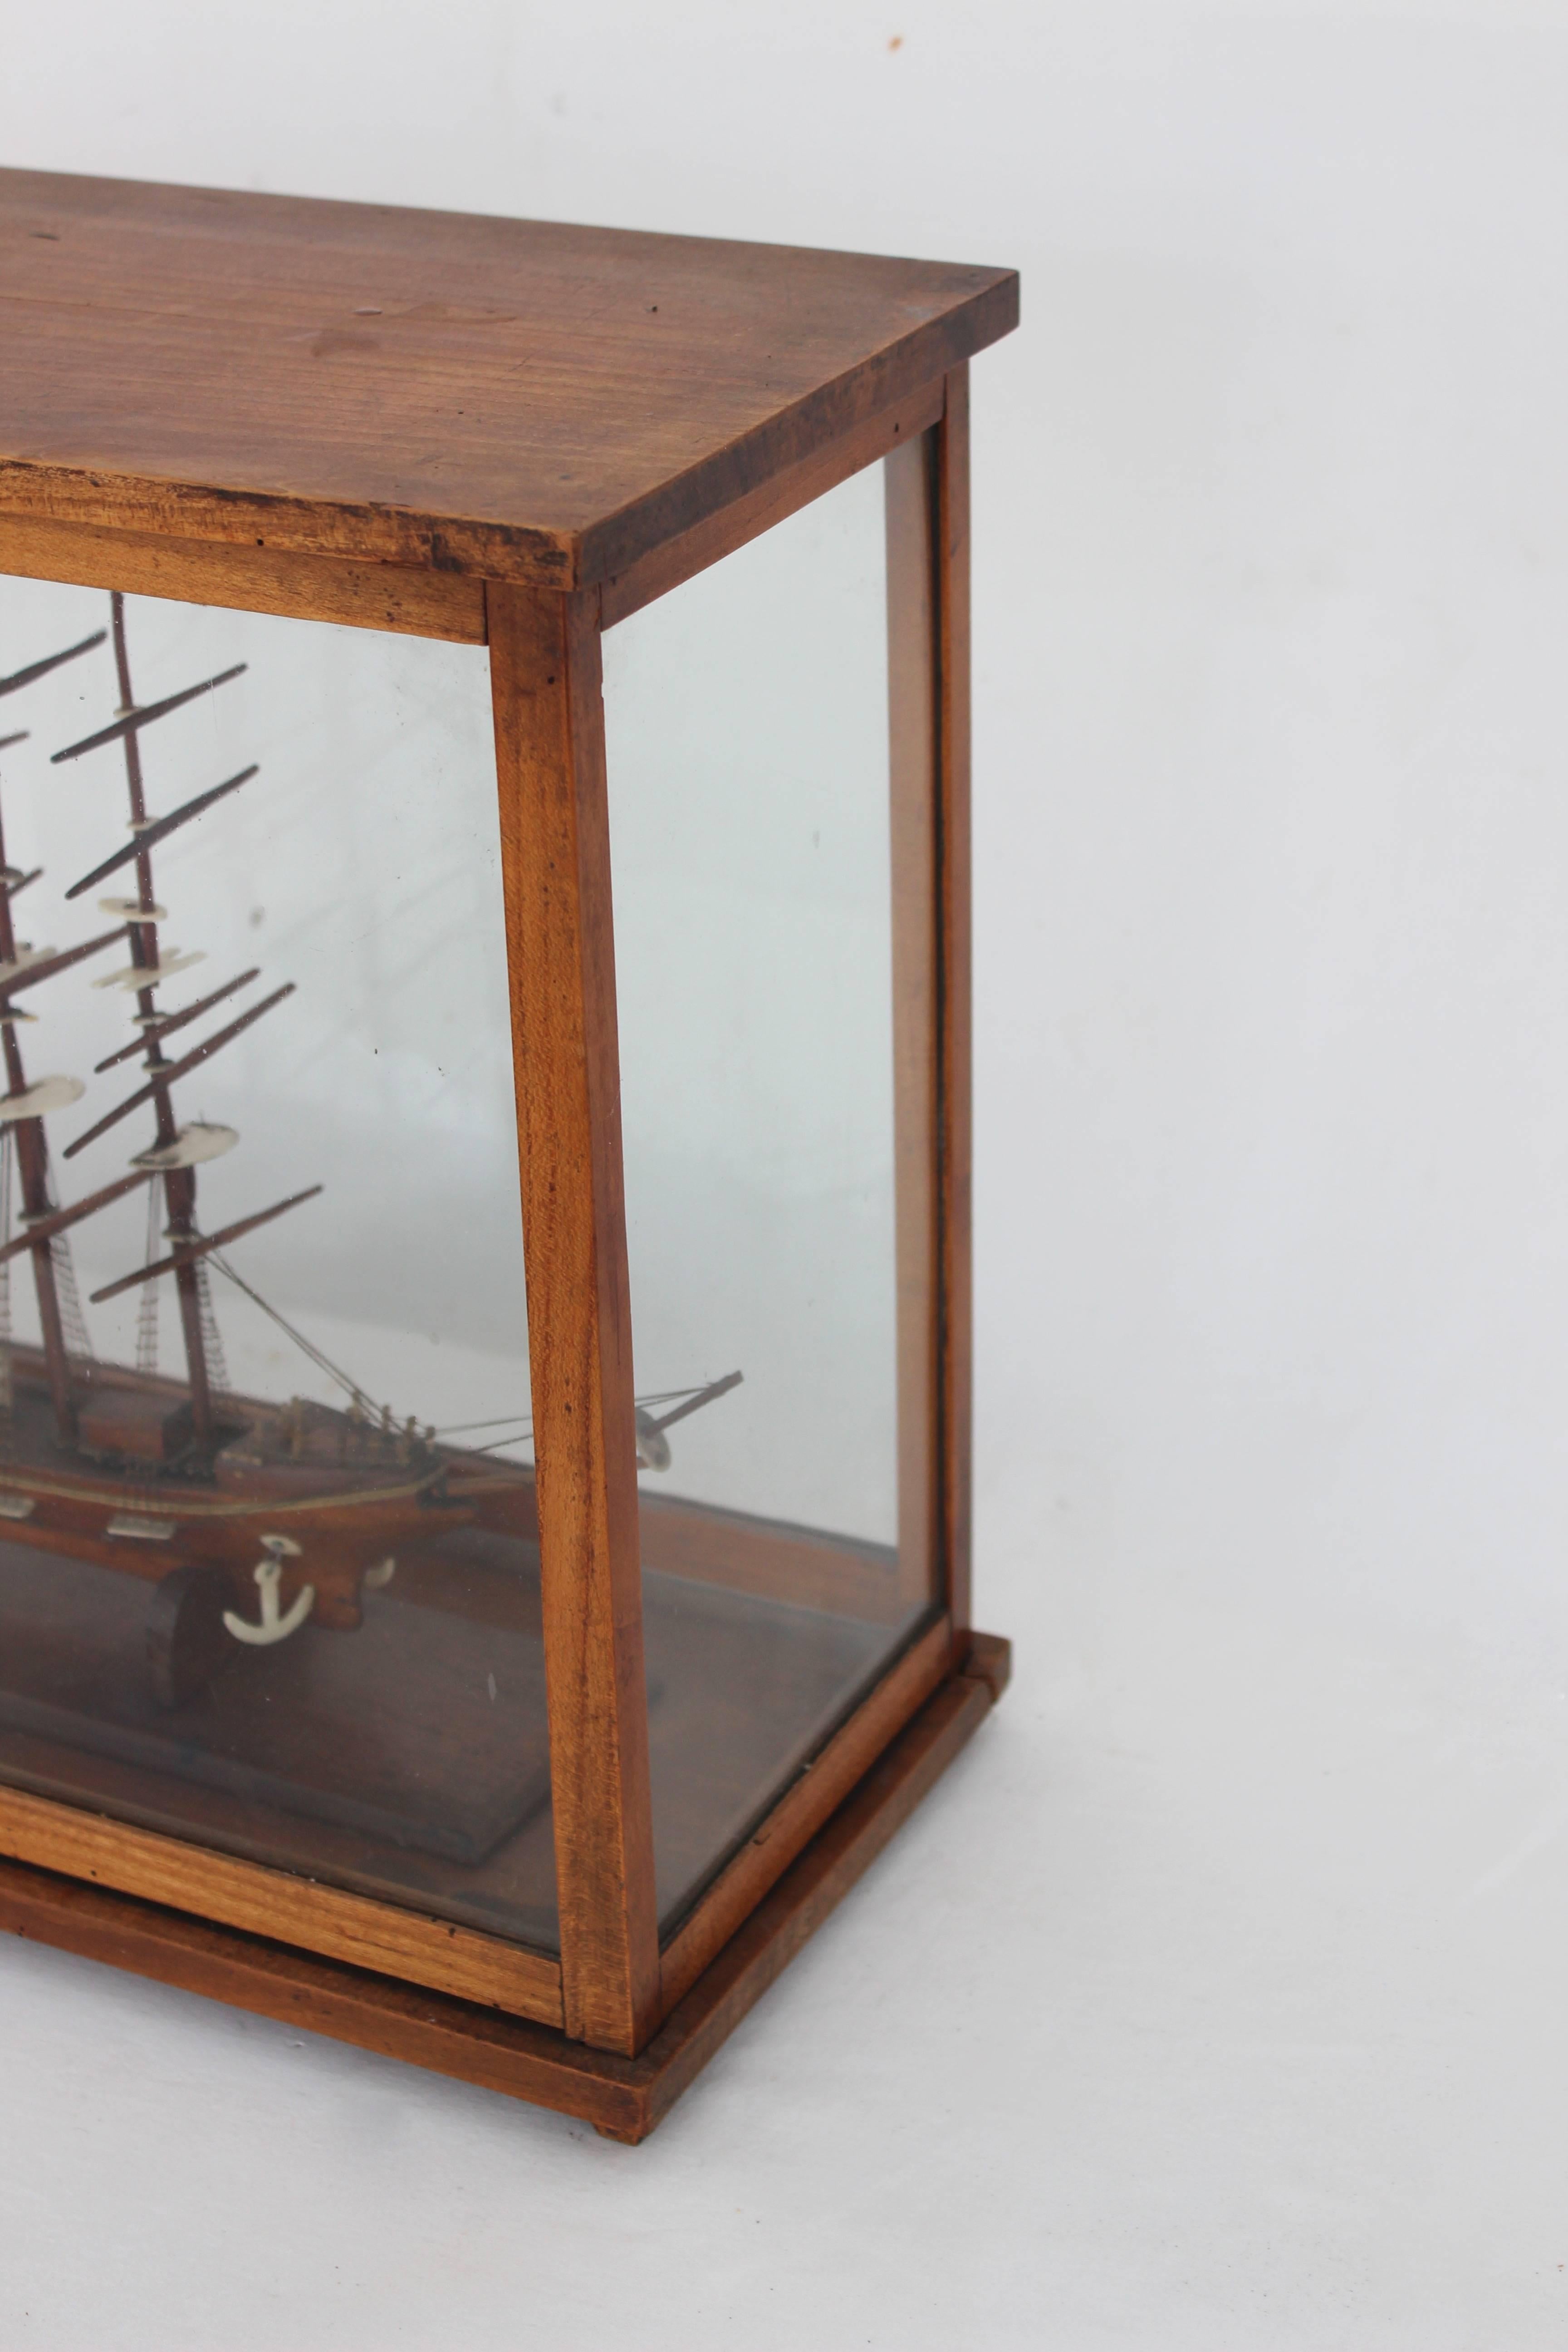 Ship Model in Glass Case 2